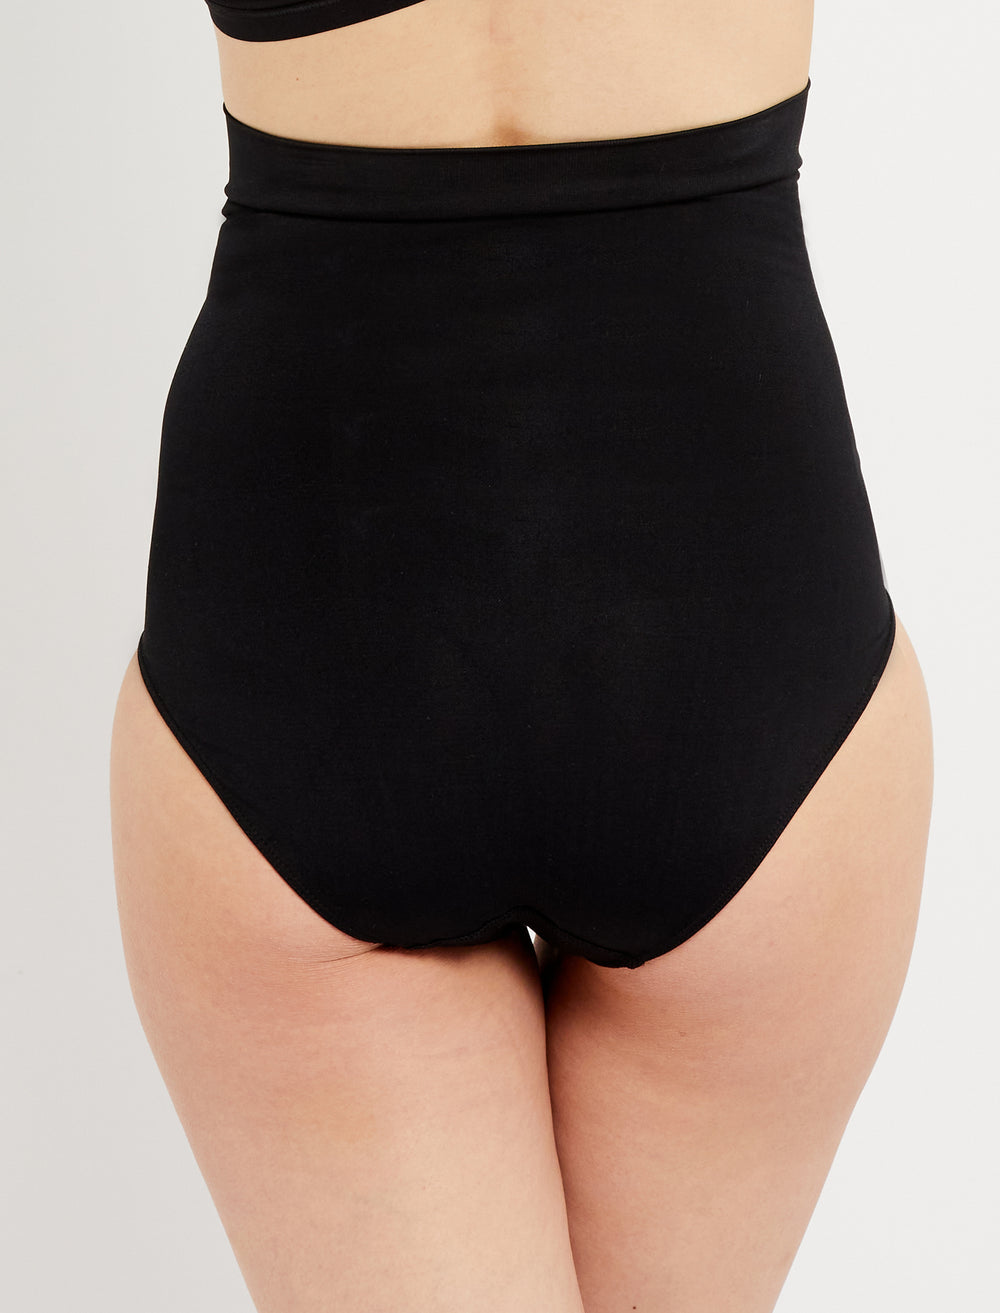 UpSpring C-Panty Post C-Section Care Underwear High Waist Black (1X-2X)  Slims - Conseil scolaire francophone de Terre-Neuve et Labrador